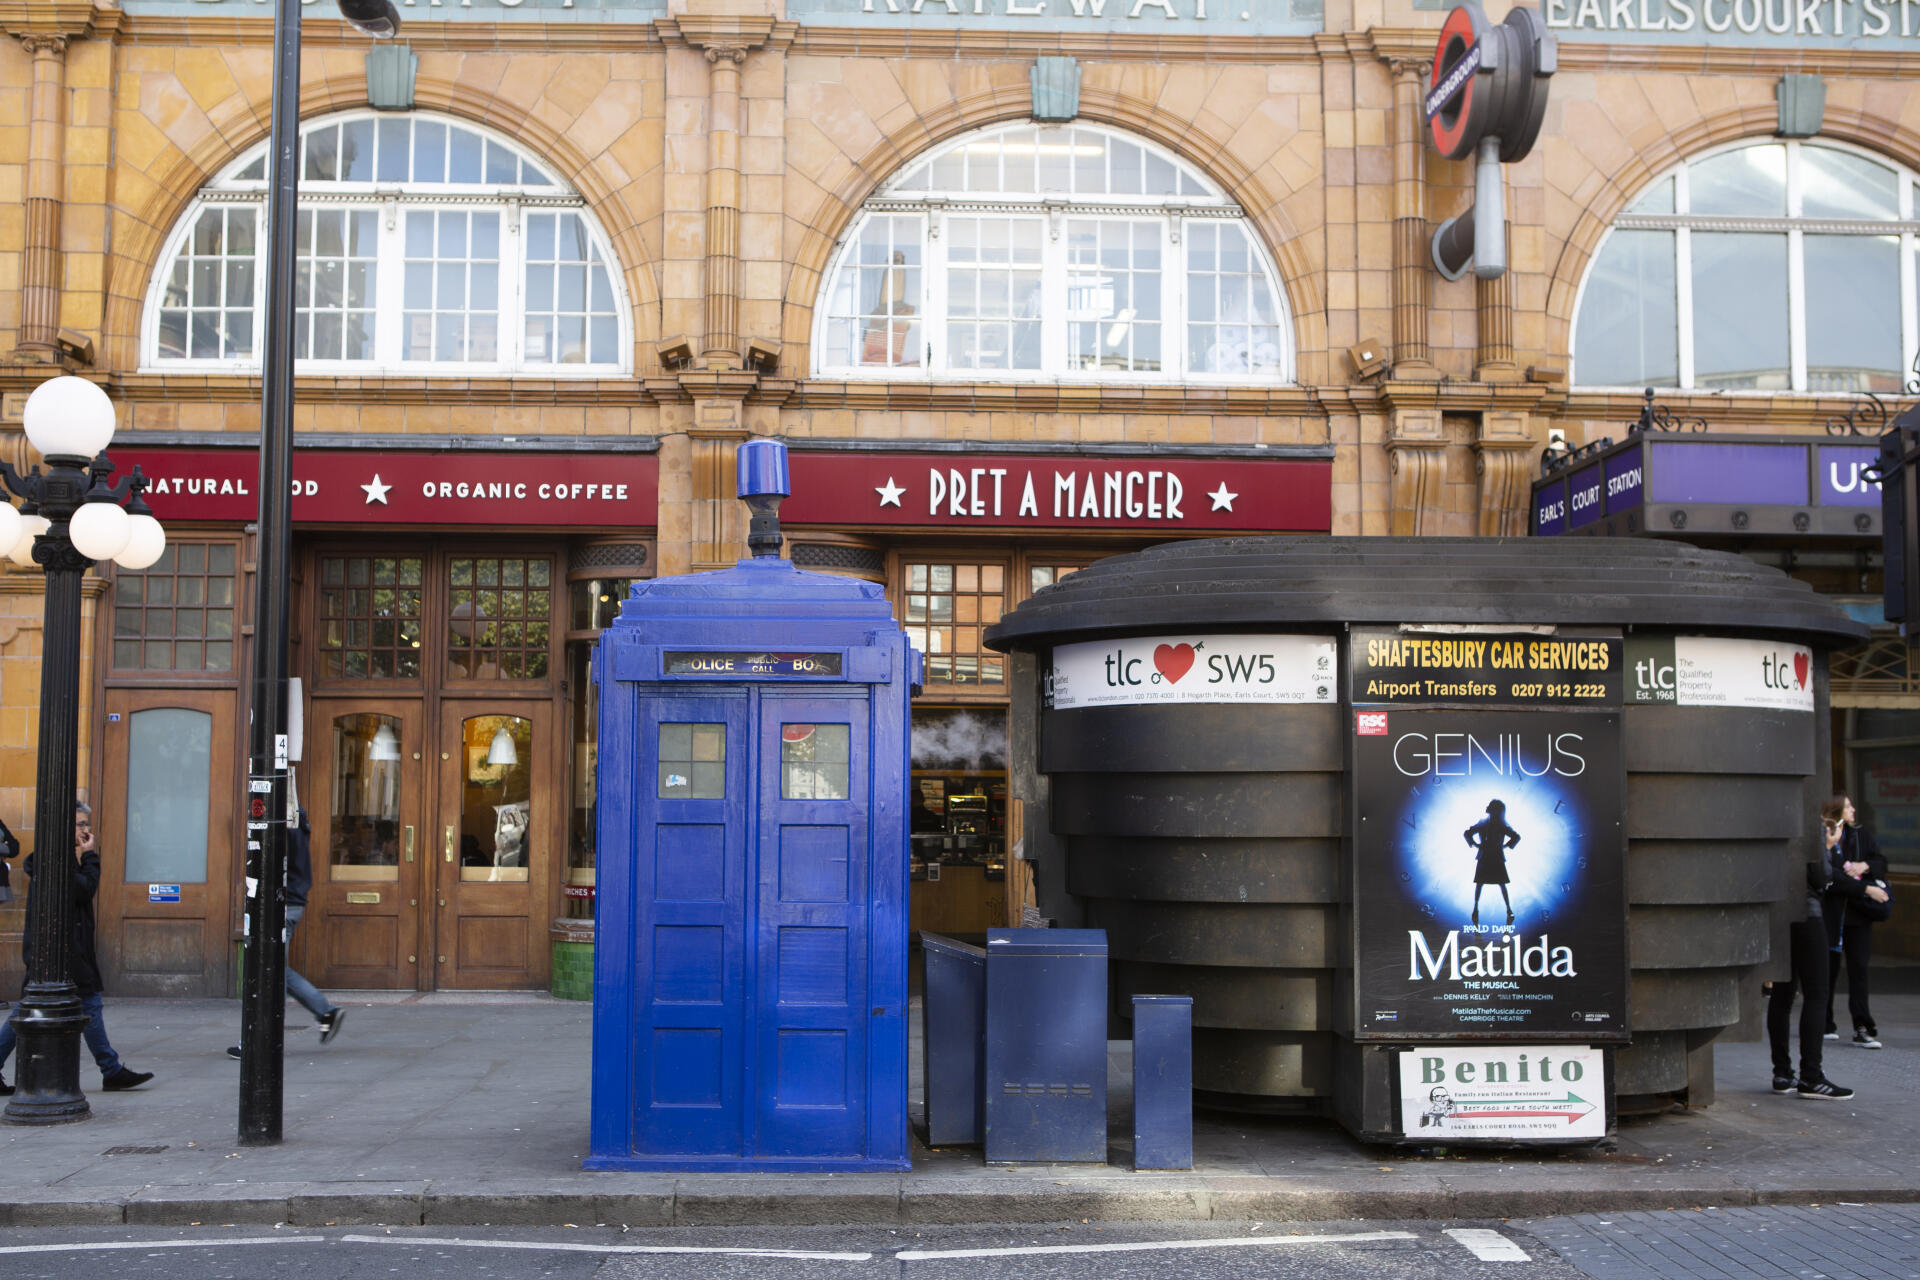 A la sortie de la station Earl’s Court, à Londres, trône un Tardis, la machine à voyager dans le temps du docteur. En réalité, il s’agit d’une mini-station de police, comme il y en avait beaucoup autrefois dans les rues britanniques.